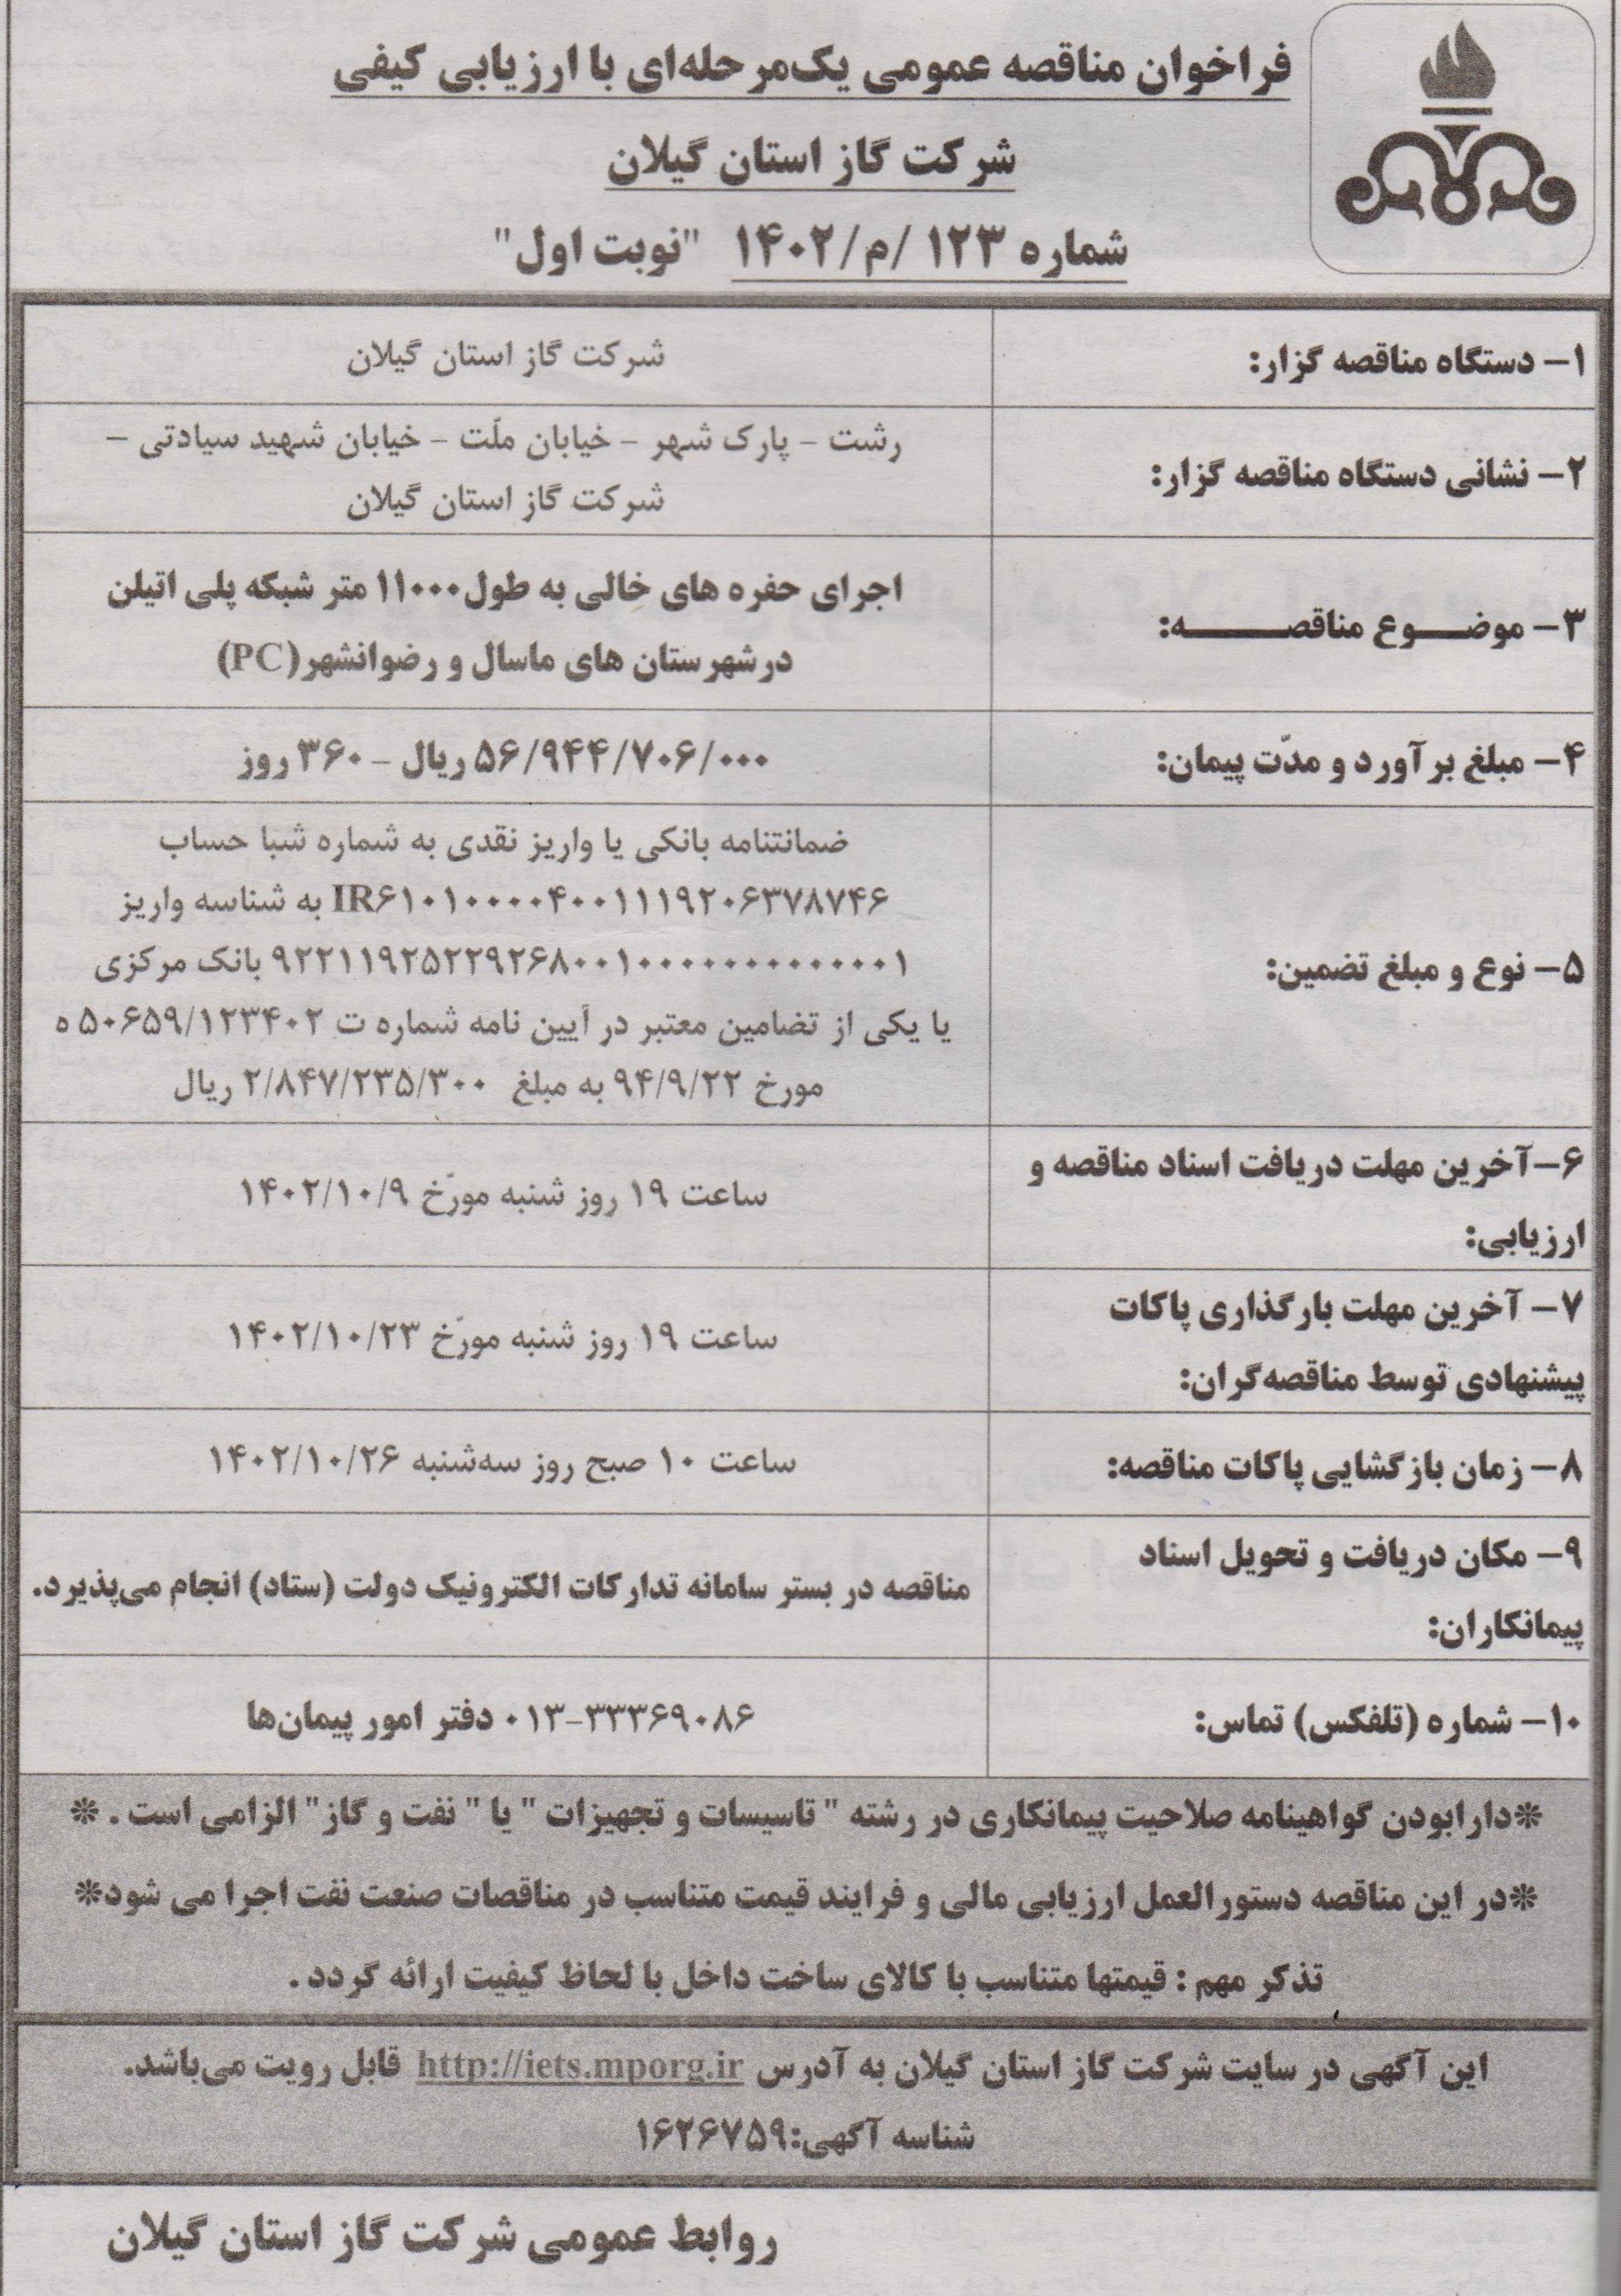 اجرای حفره های خالی شهرستان های ماسال و رضوانشهر - 6 دی 1402